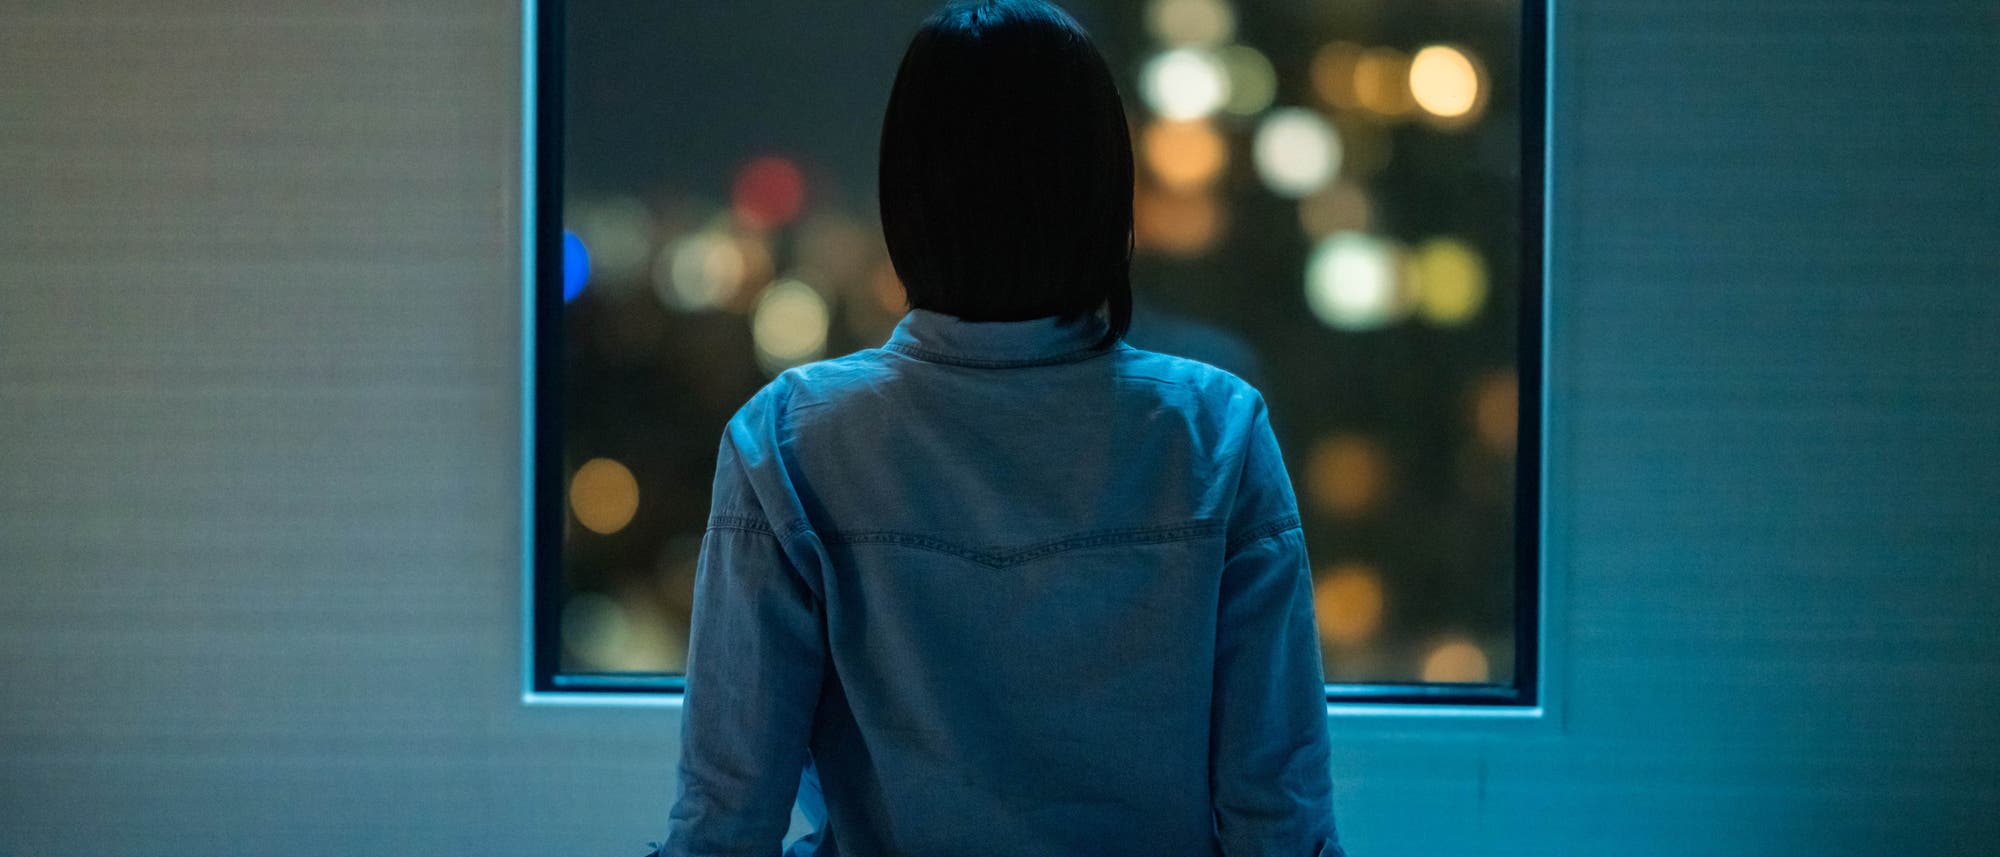 Frau blickt durchs Fenster auf Lichter in der Nacht